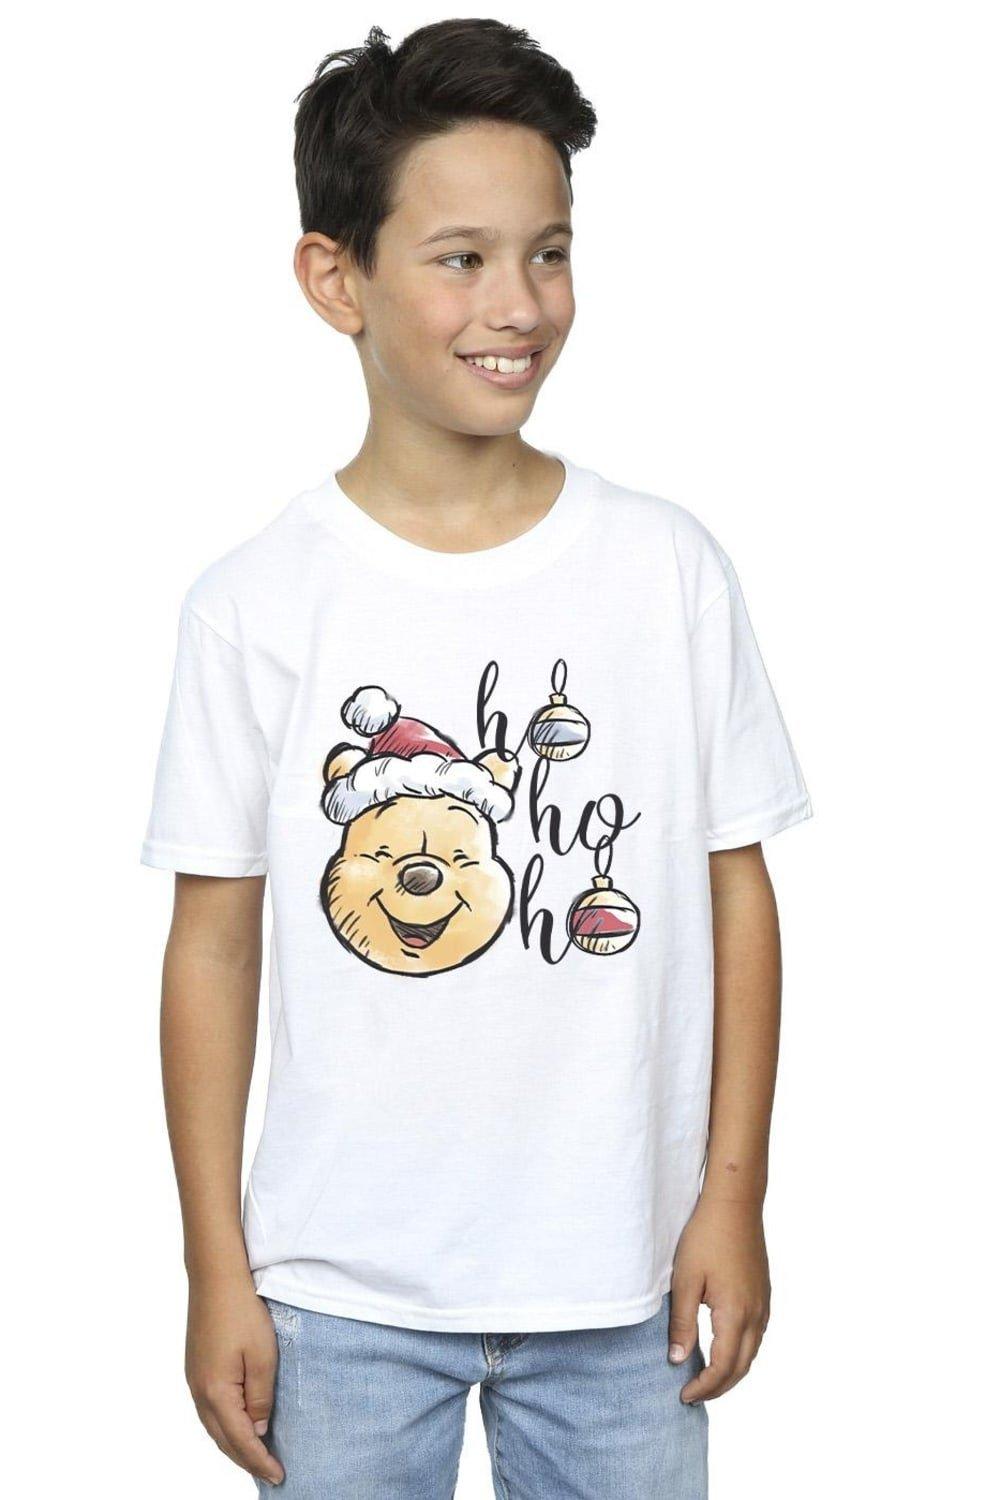 Winnie The Pooh Ho Ho Ho Baubles T-Shirt